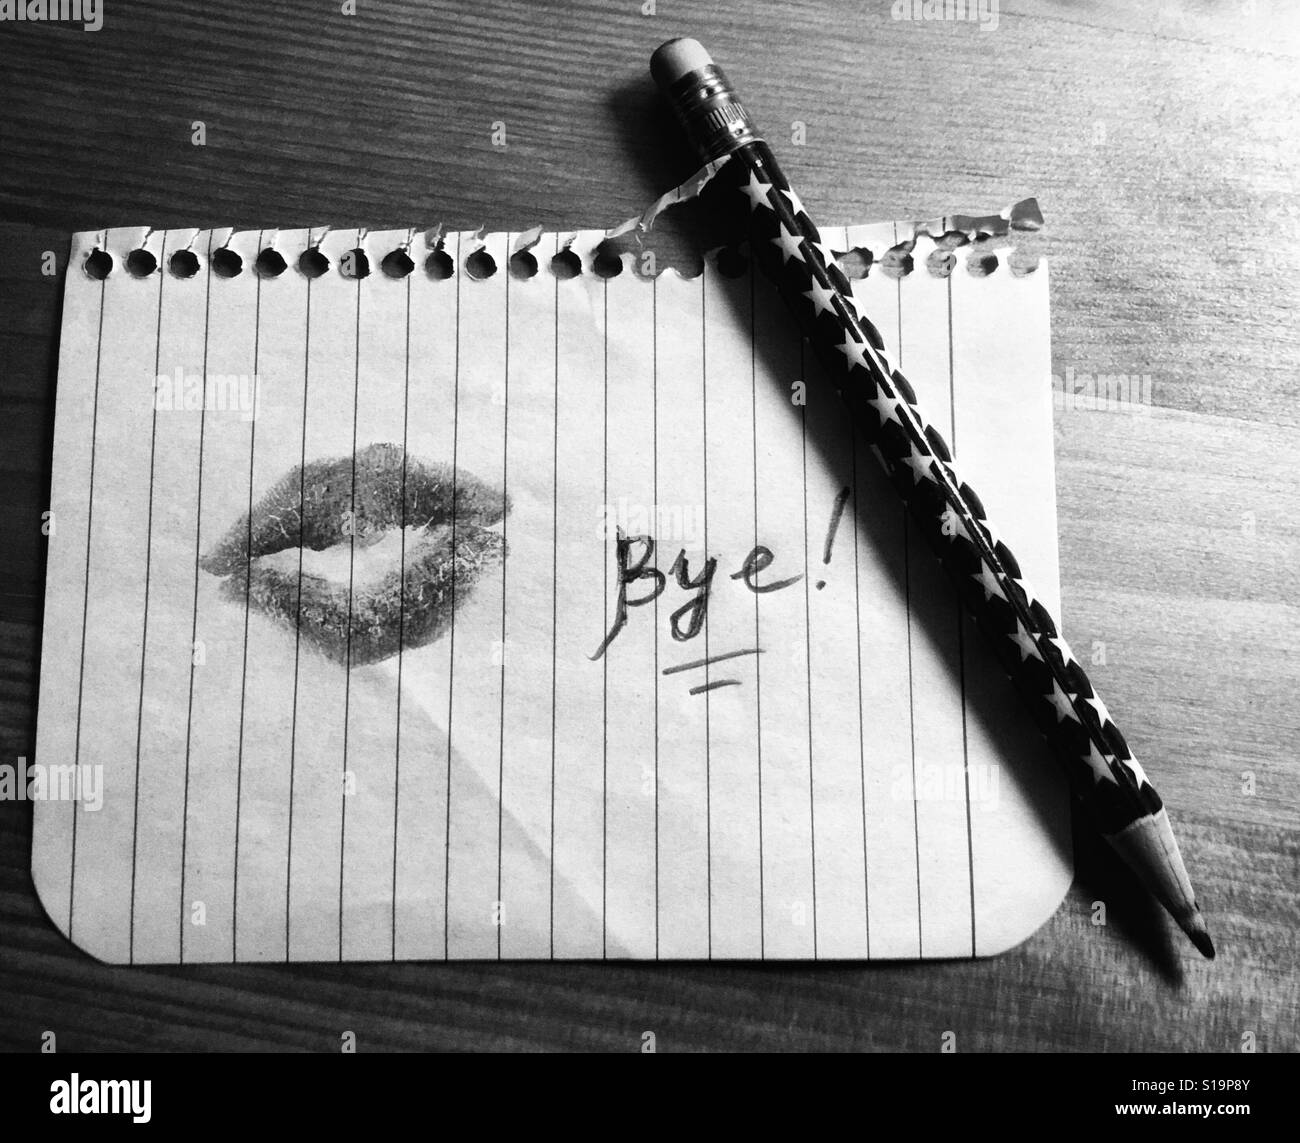 Frau Lippenstift Mark auf Blatt Papier, das Wort 'Auf Wiedersehen' dort geschrieben und einen Stift in der Nähe Stockfoto